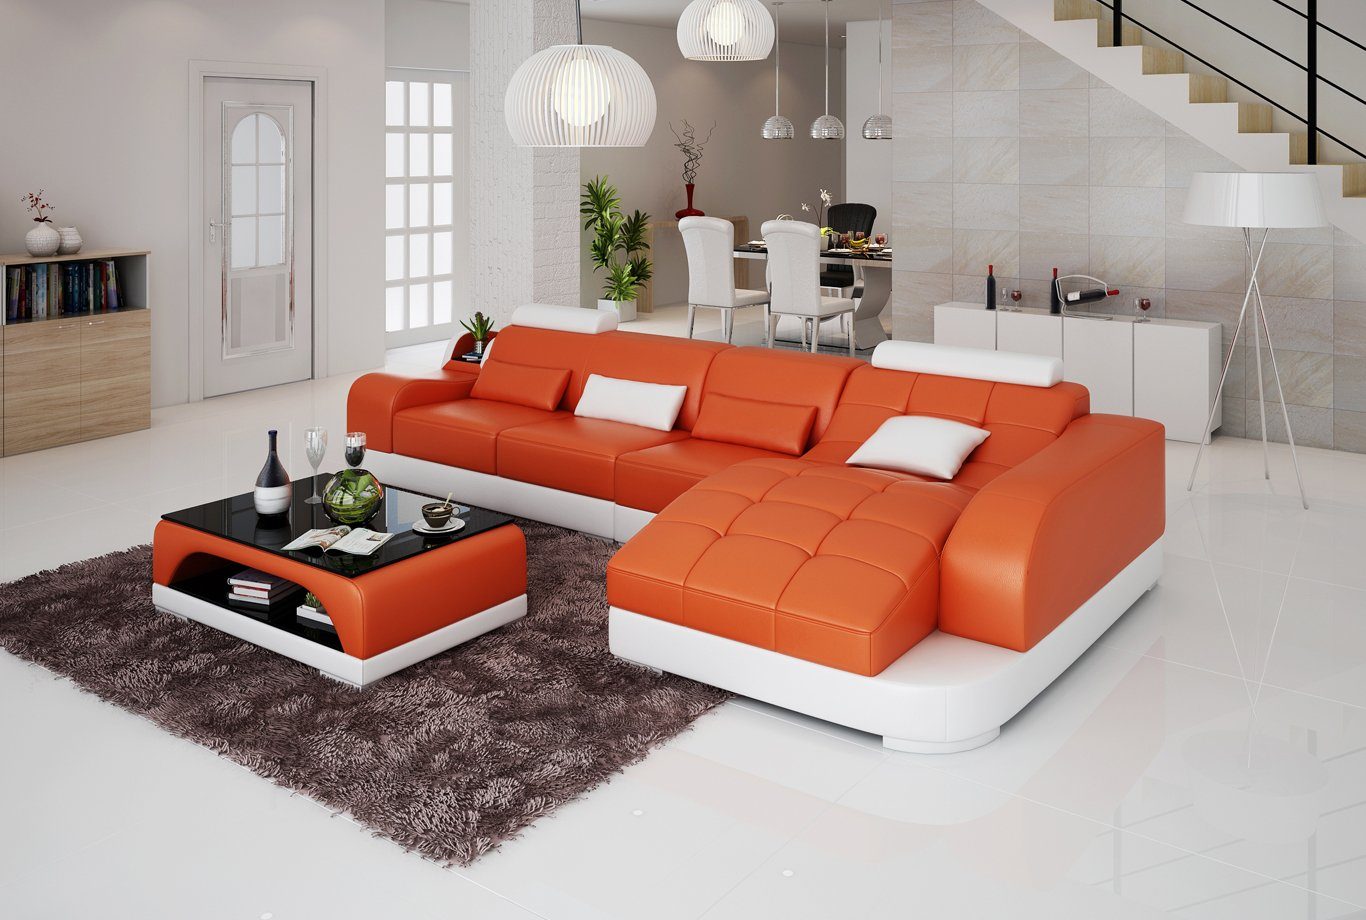 JVmoebel Ecksofa Ecksofa L Form Stoff Couch Wohnlandschaft Garnitur Design, Made in Europe Orange/Weiß